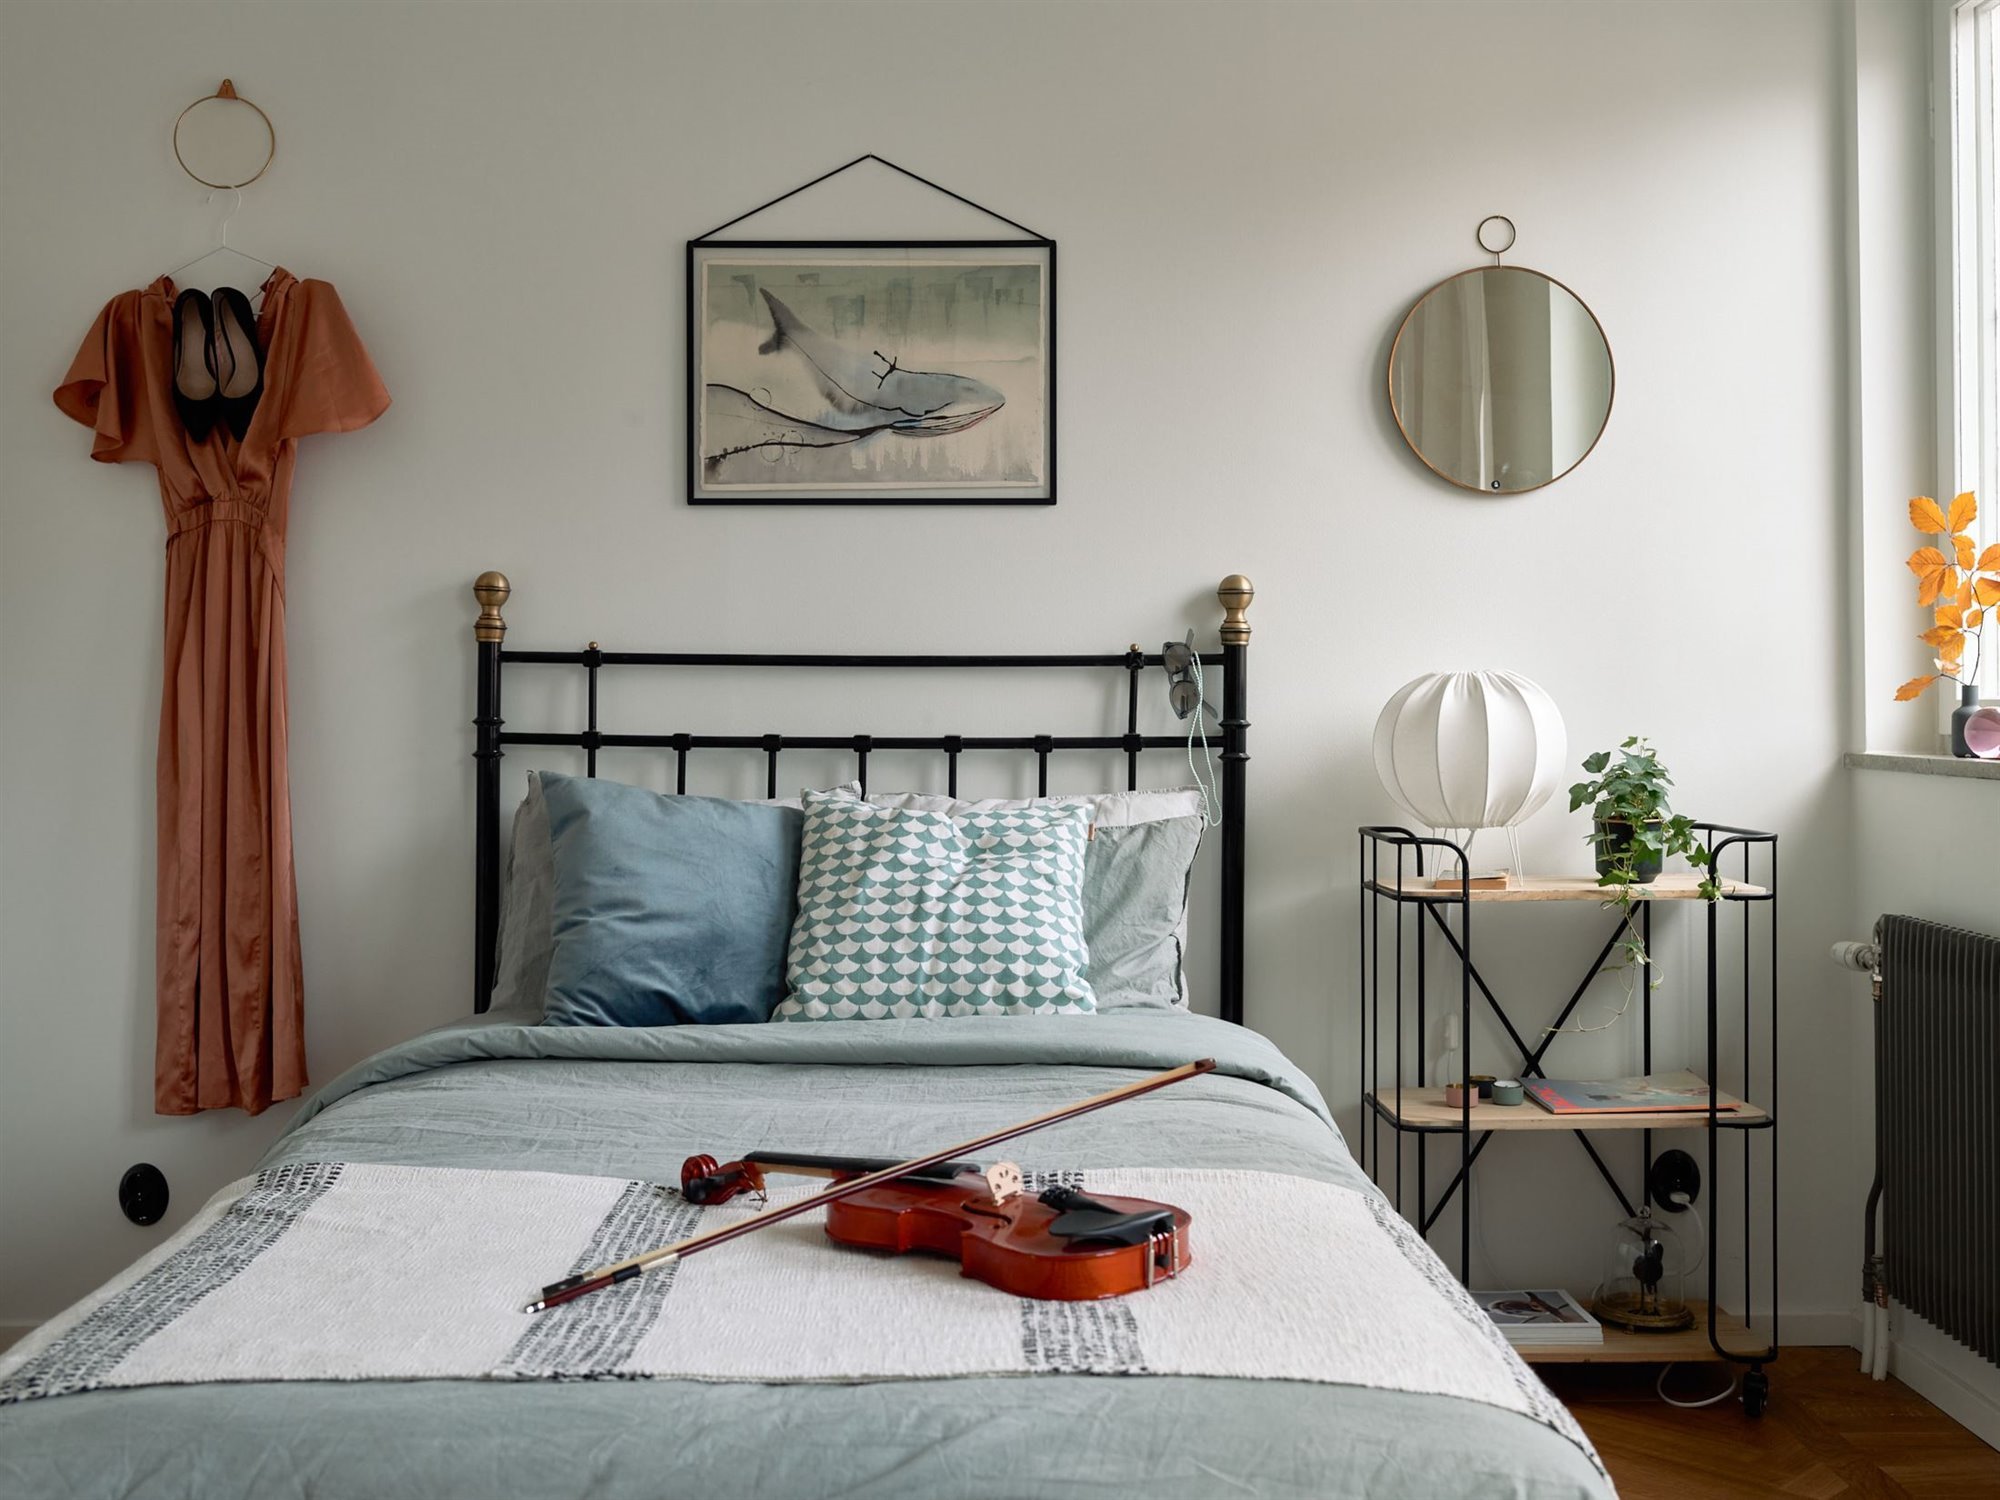 Piso en suecia con interiores de estilo nordico dormitorio juvenil